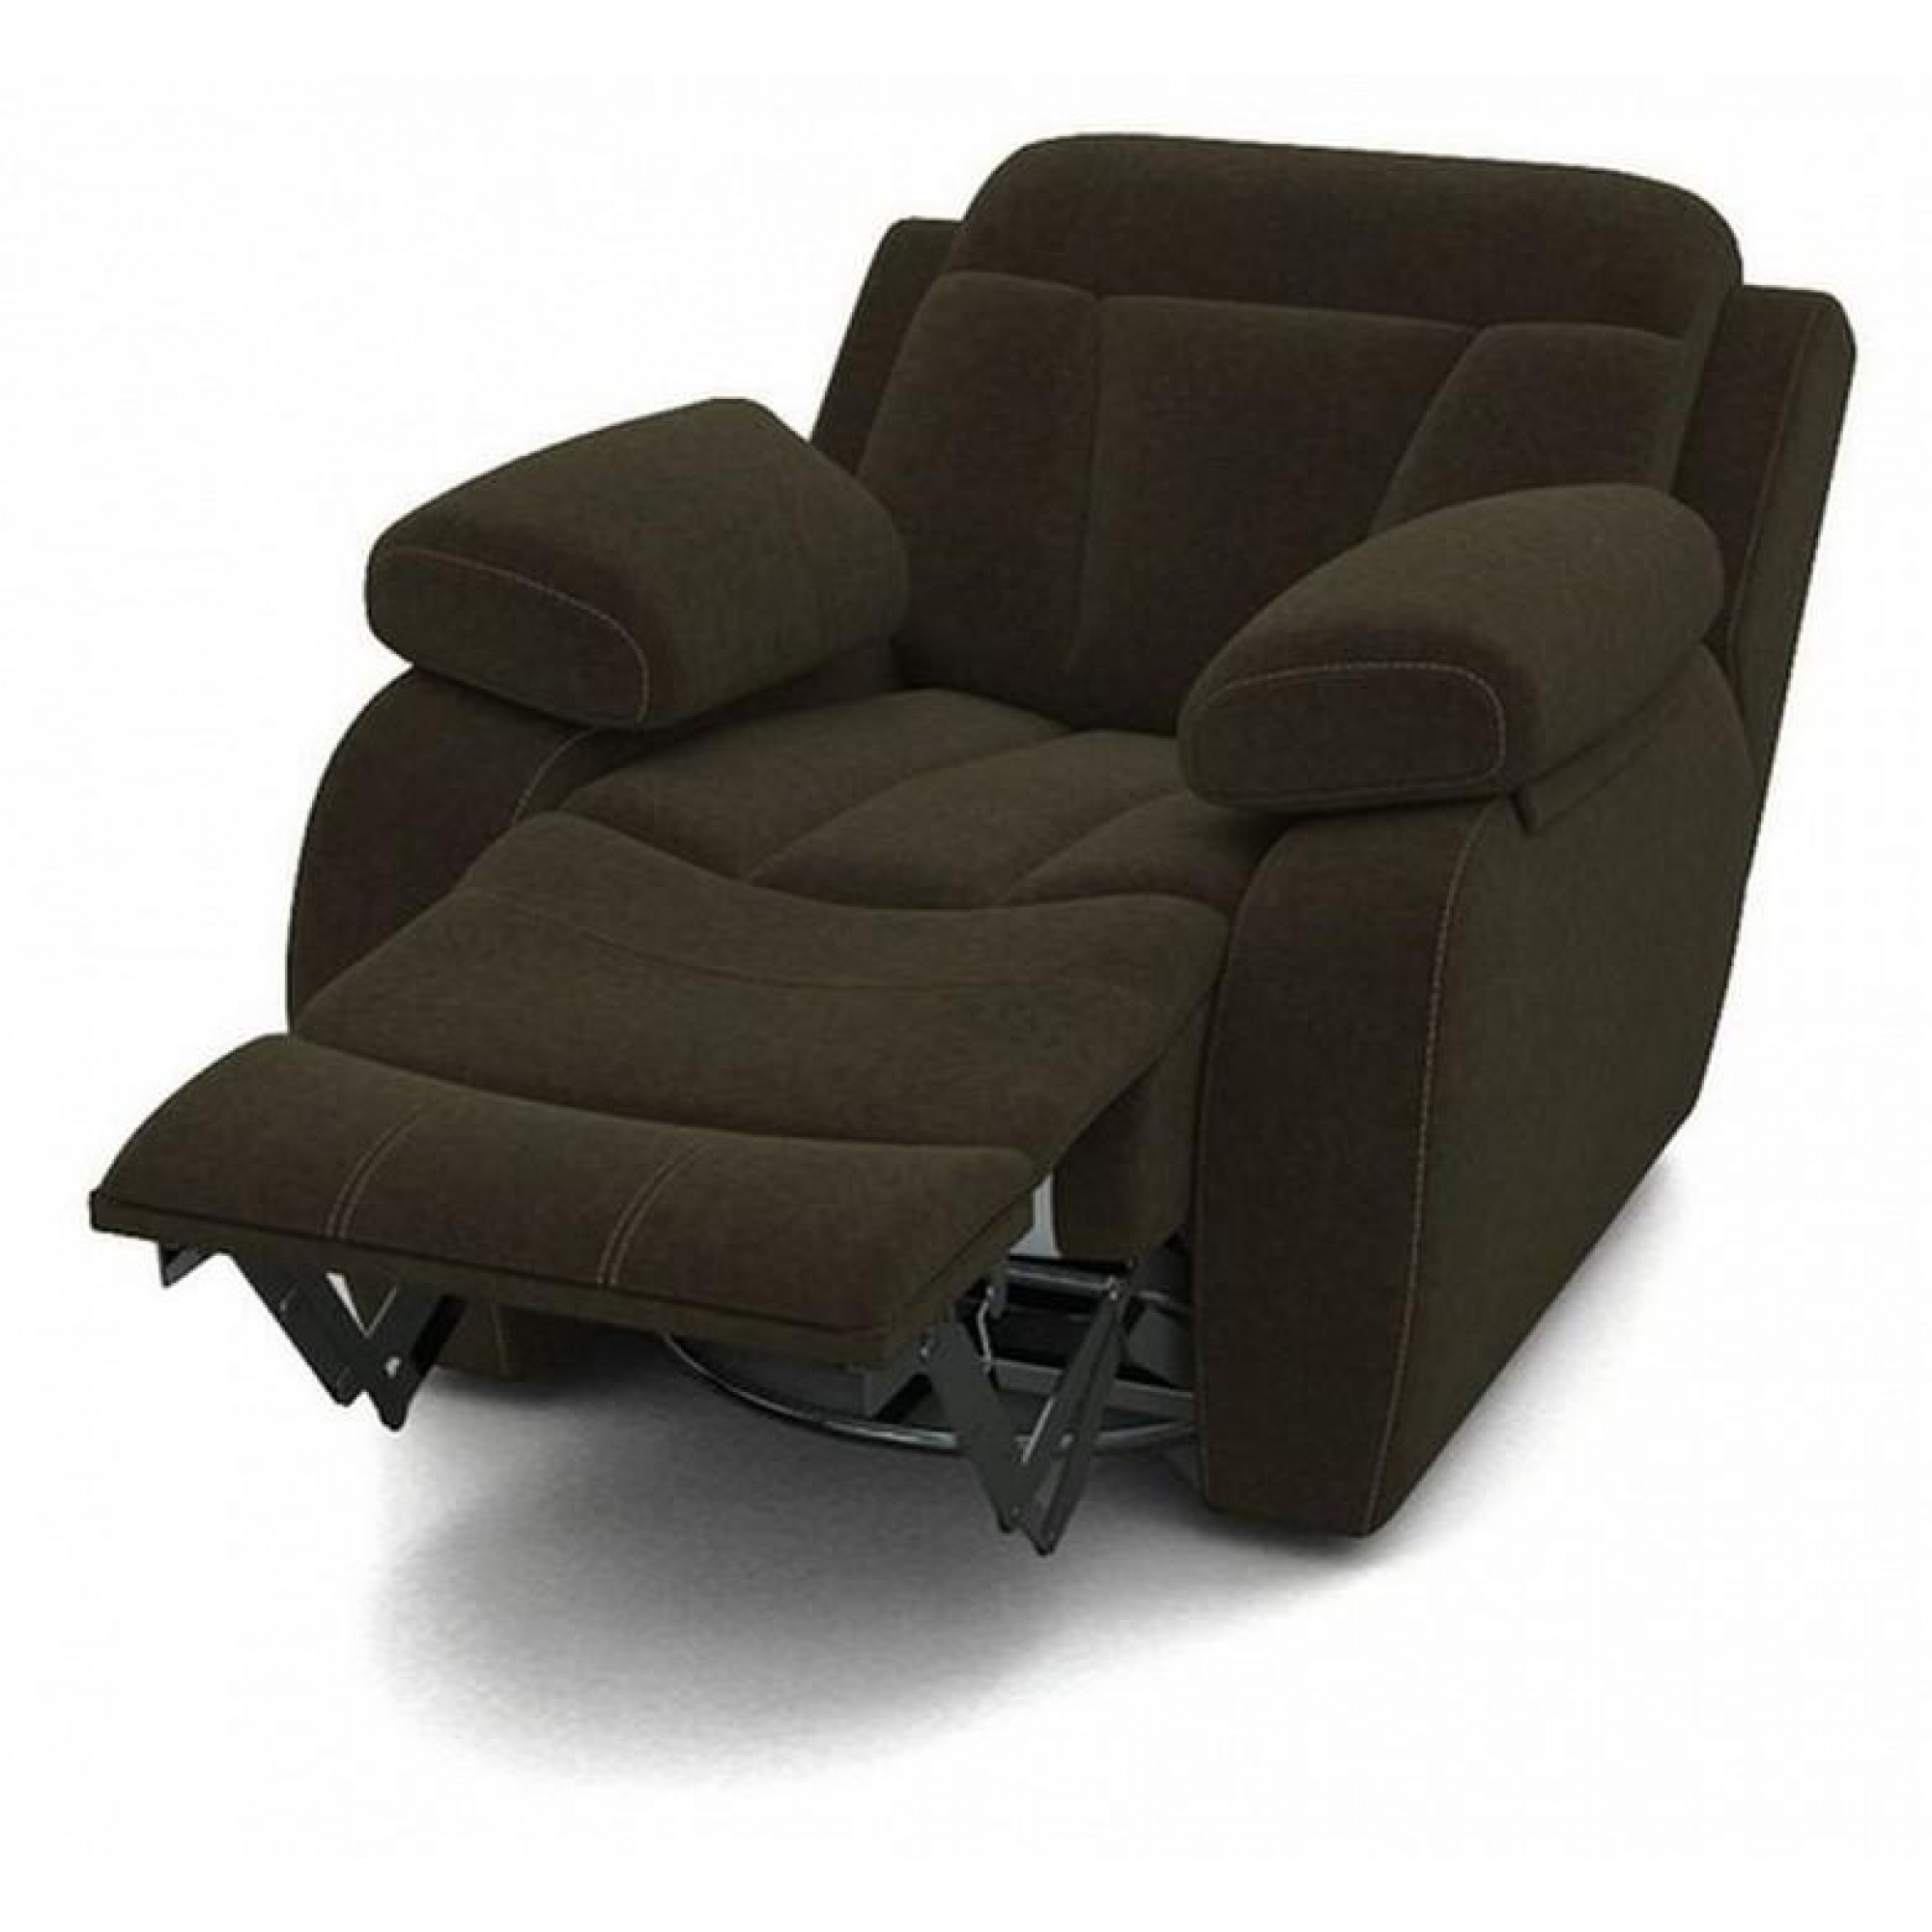 Кресло-качалка Манчестер коричневый ORM_104-107-102-MANCHESTER-37